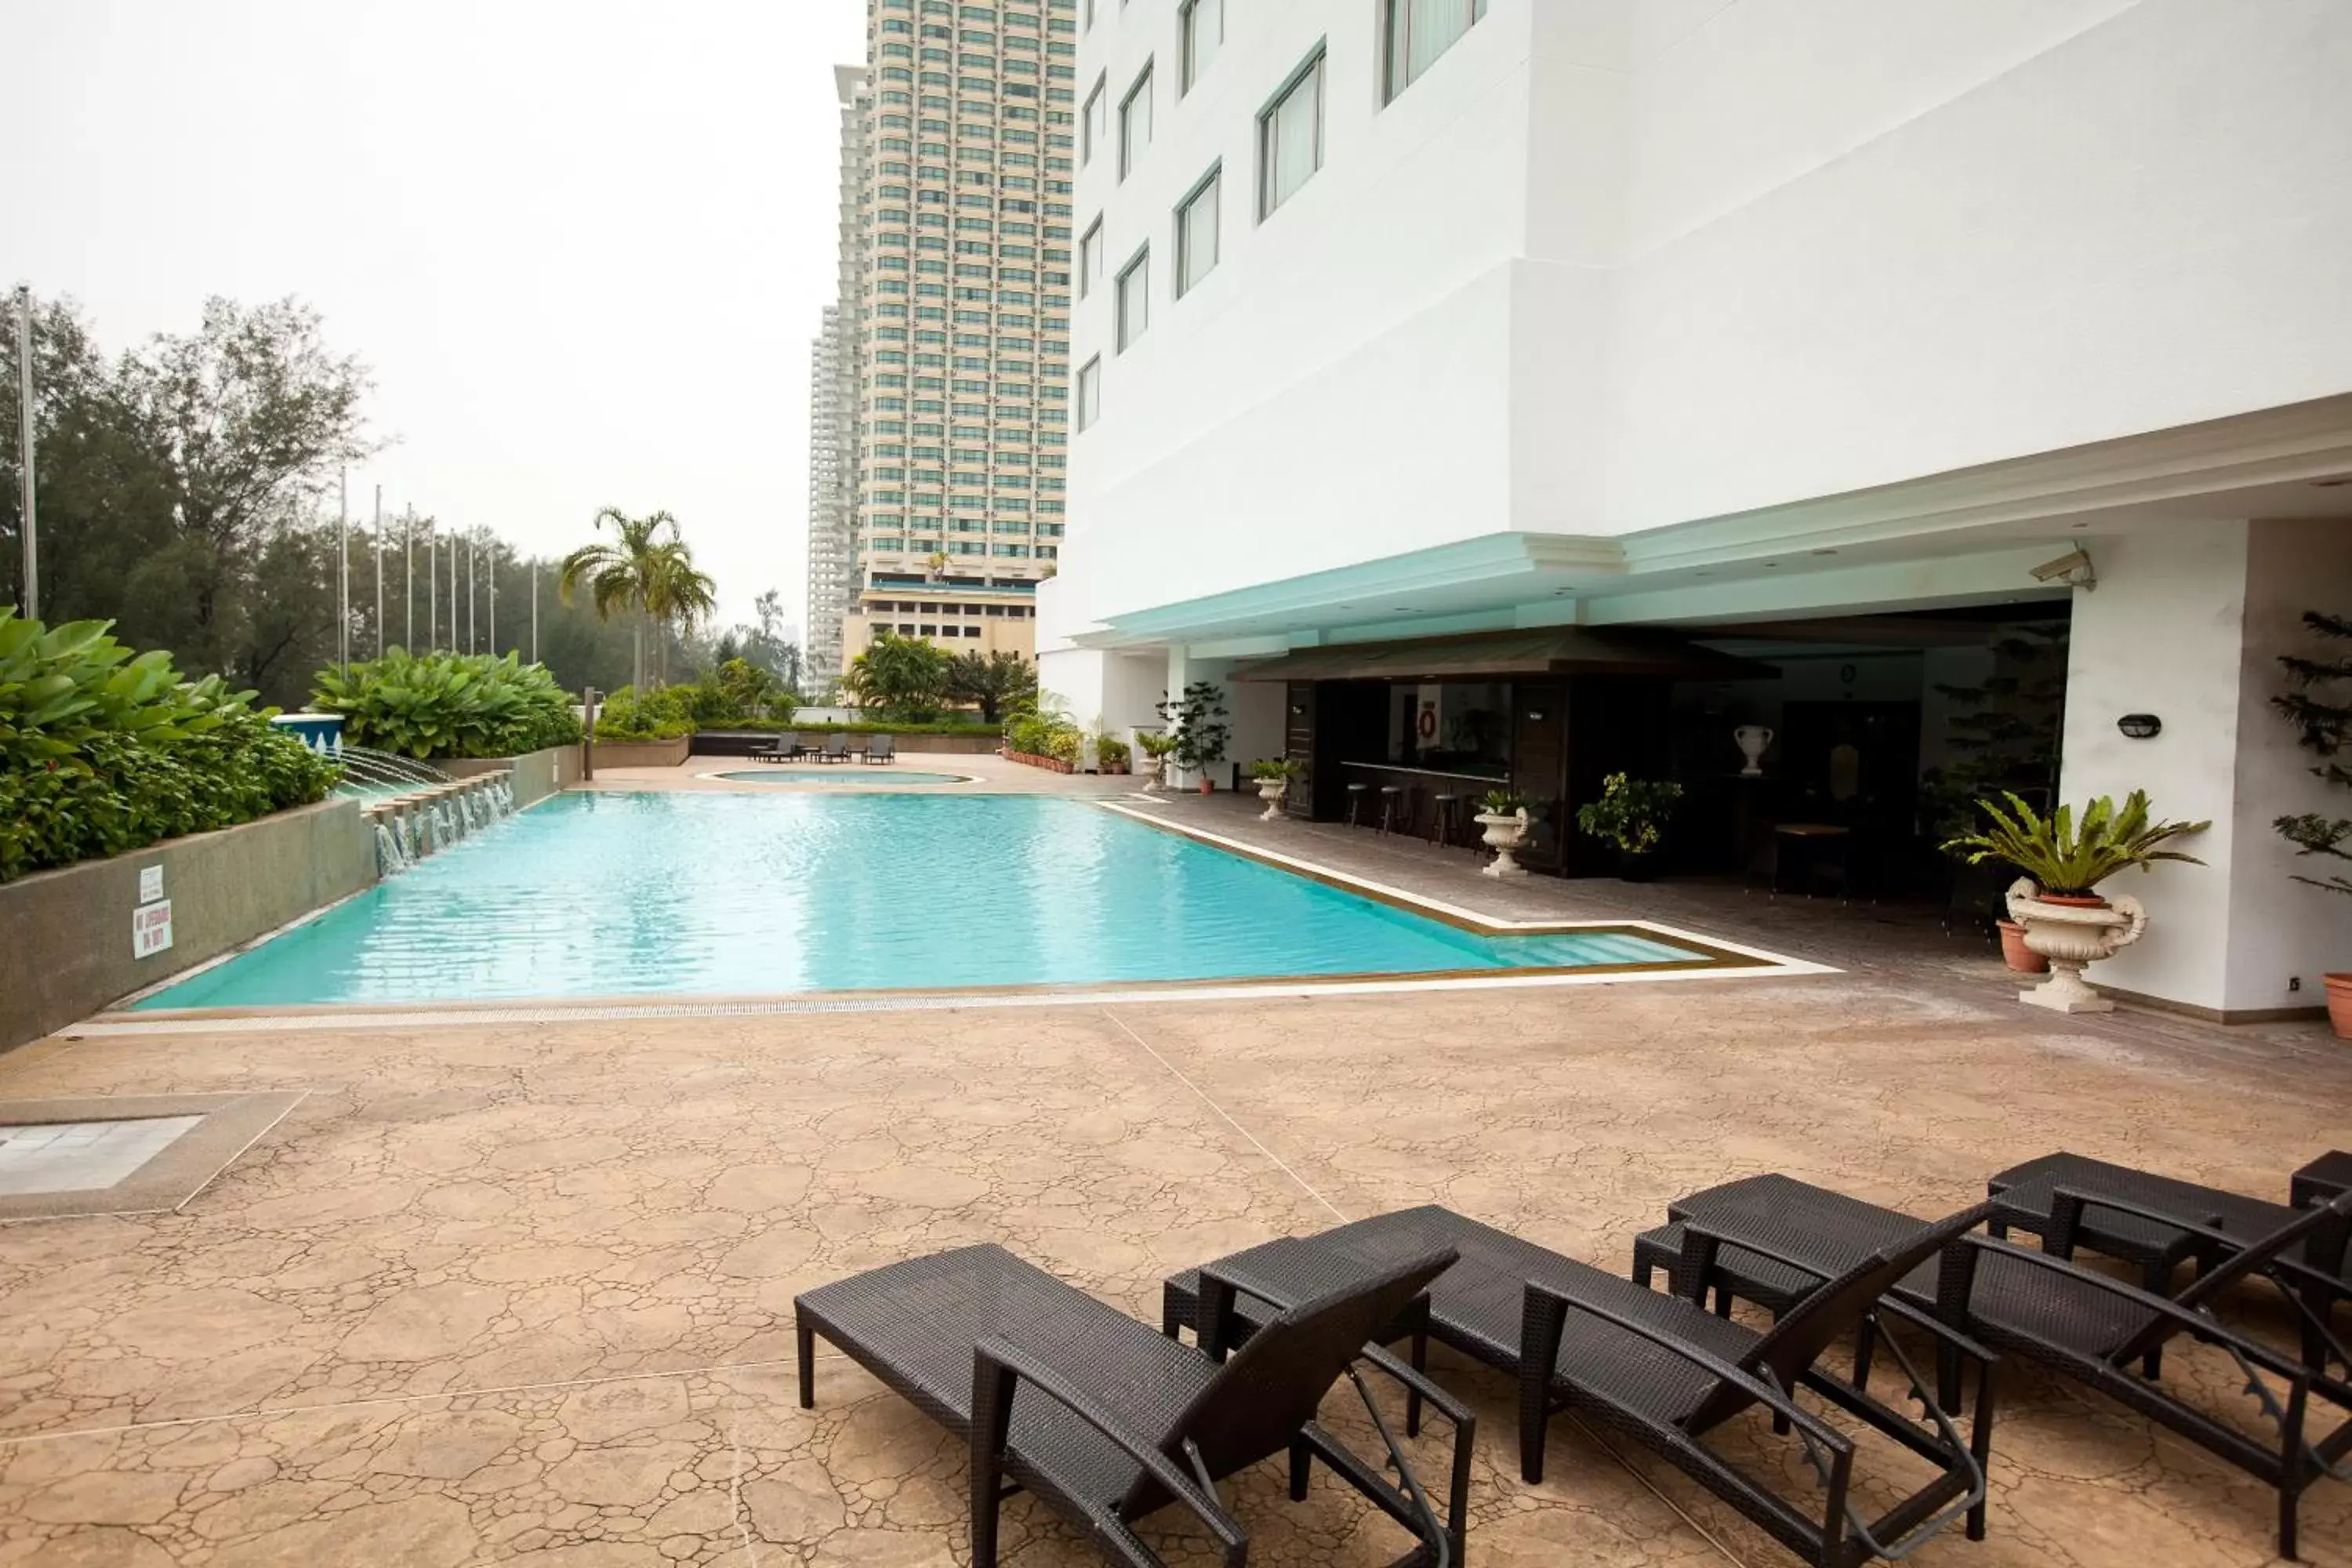 Swimming Pool in Evergreen Laurel Hotel Penang